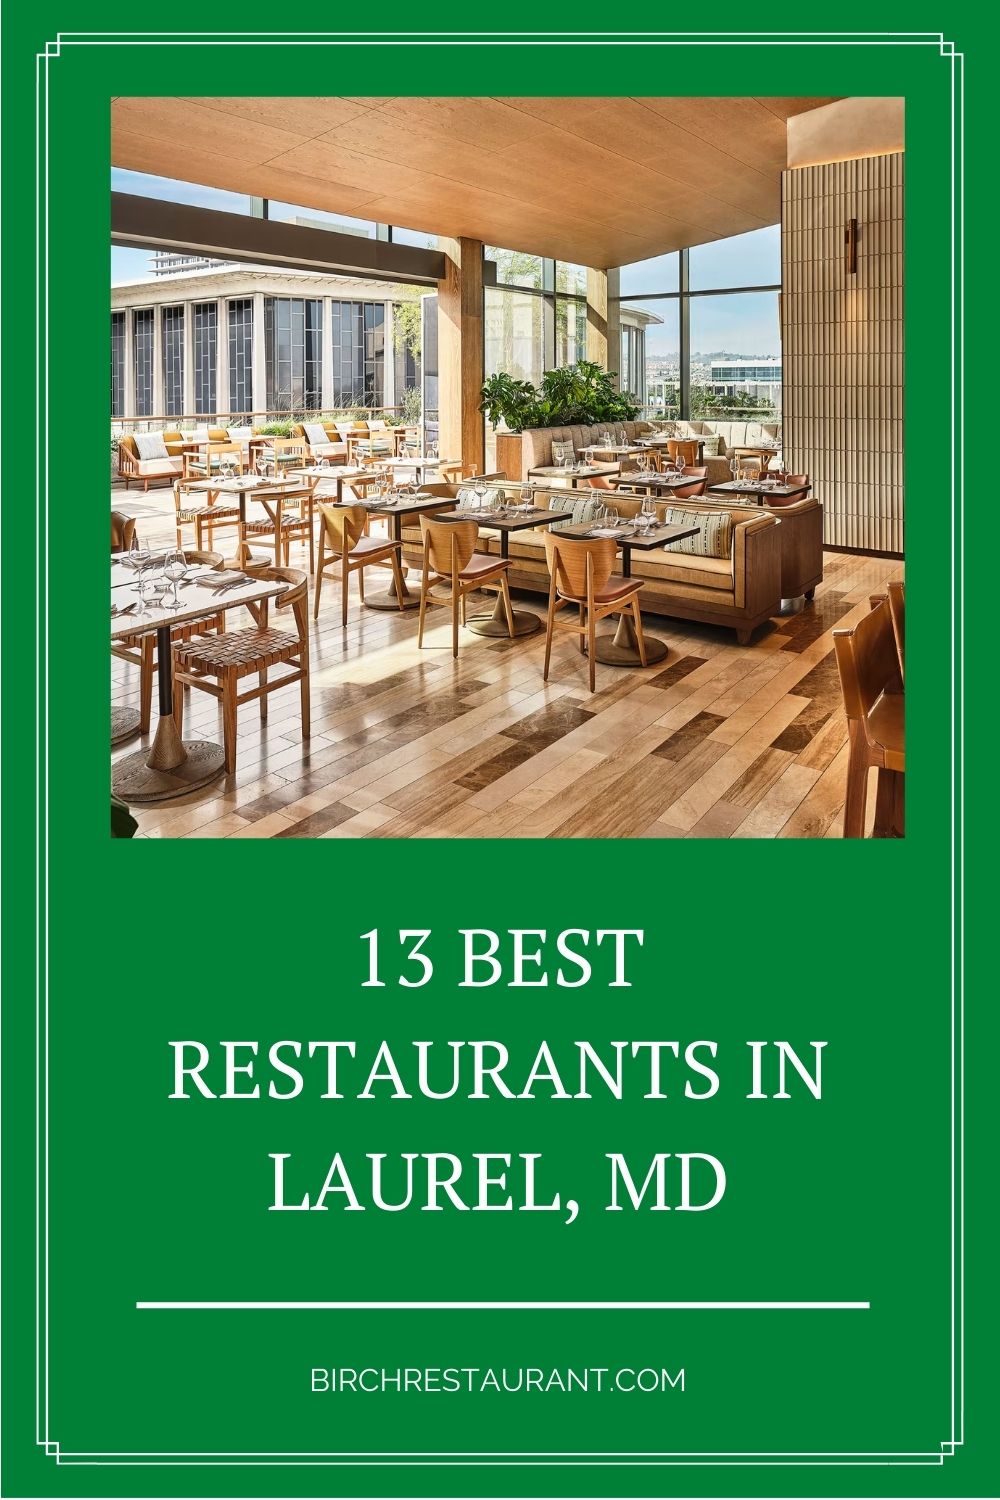 Best Restaurants in Laurel